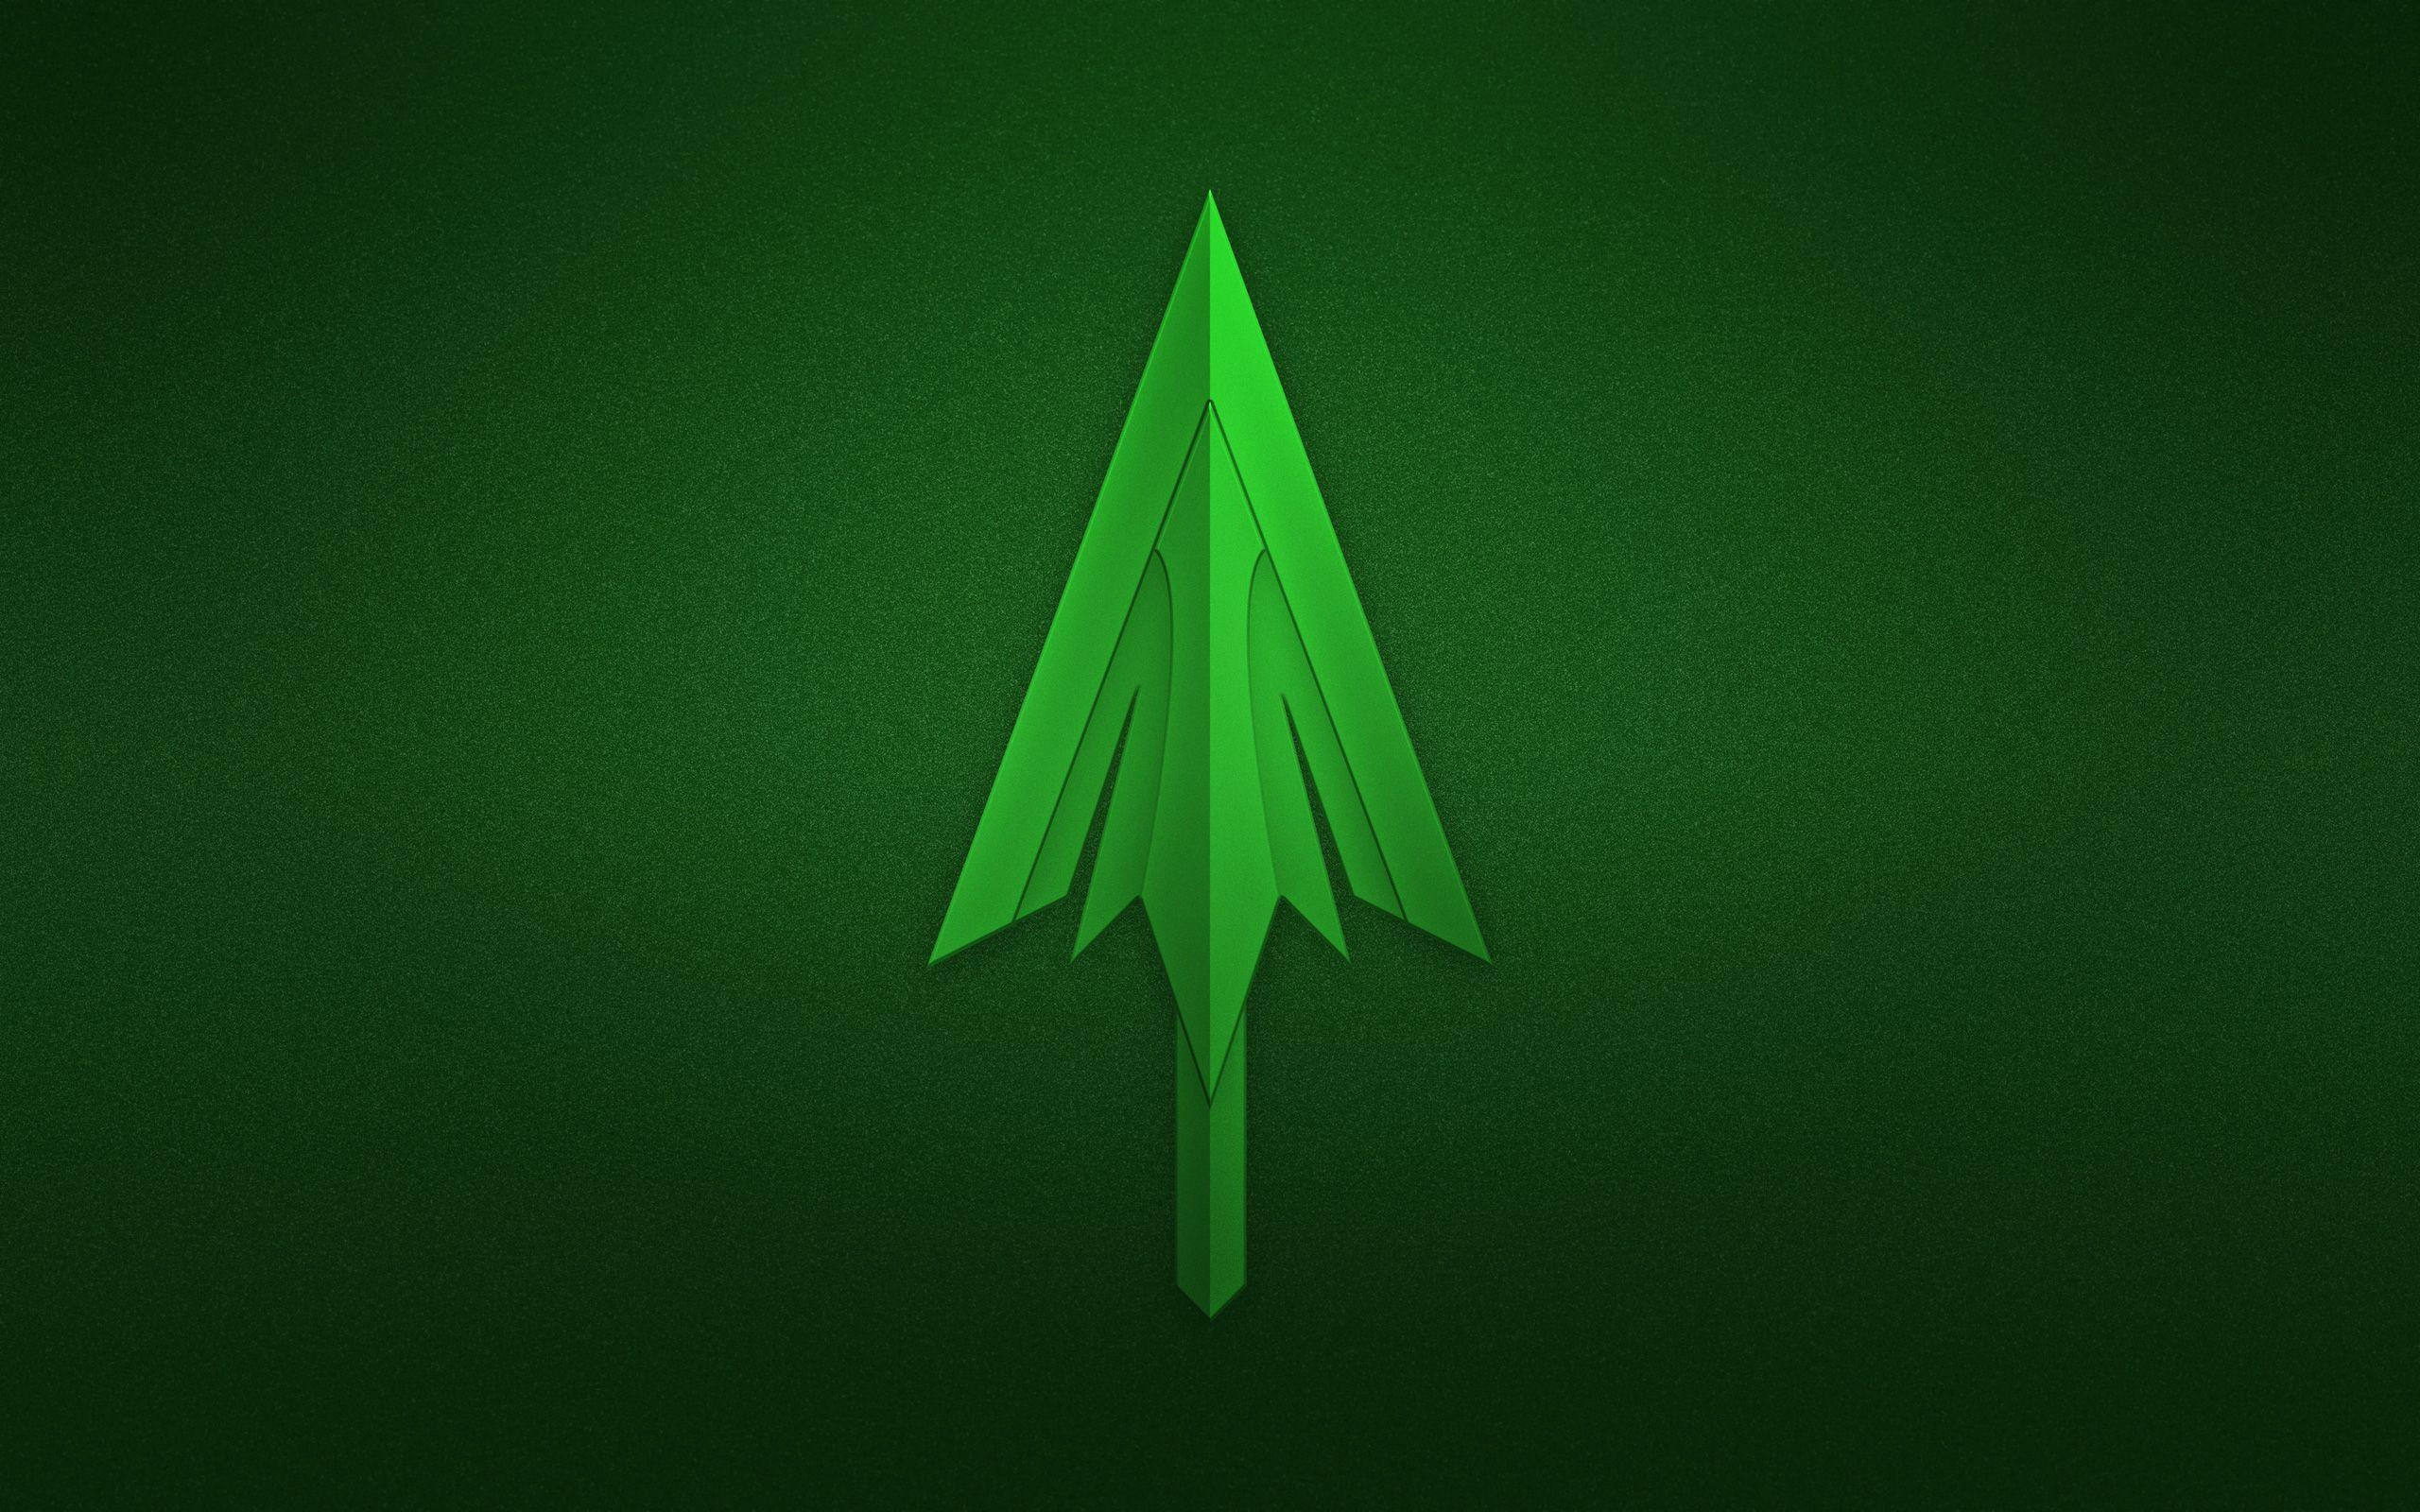 Grren Arrow Logo - Green Arrow Logo, HD Logo, 4k Wallpaper, Image, Background